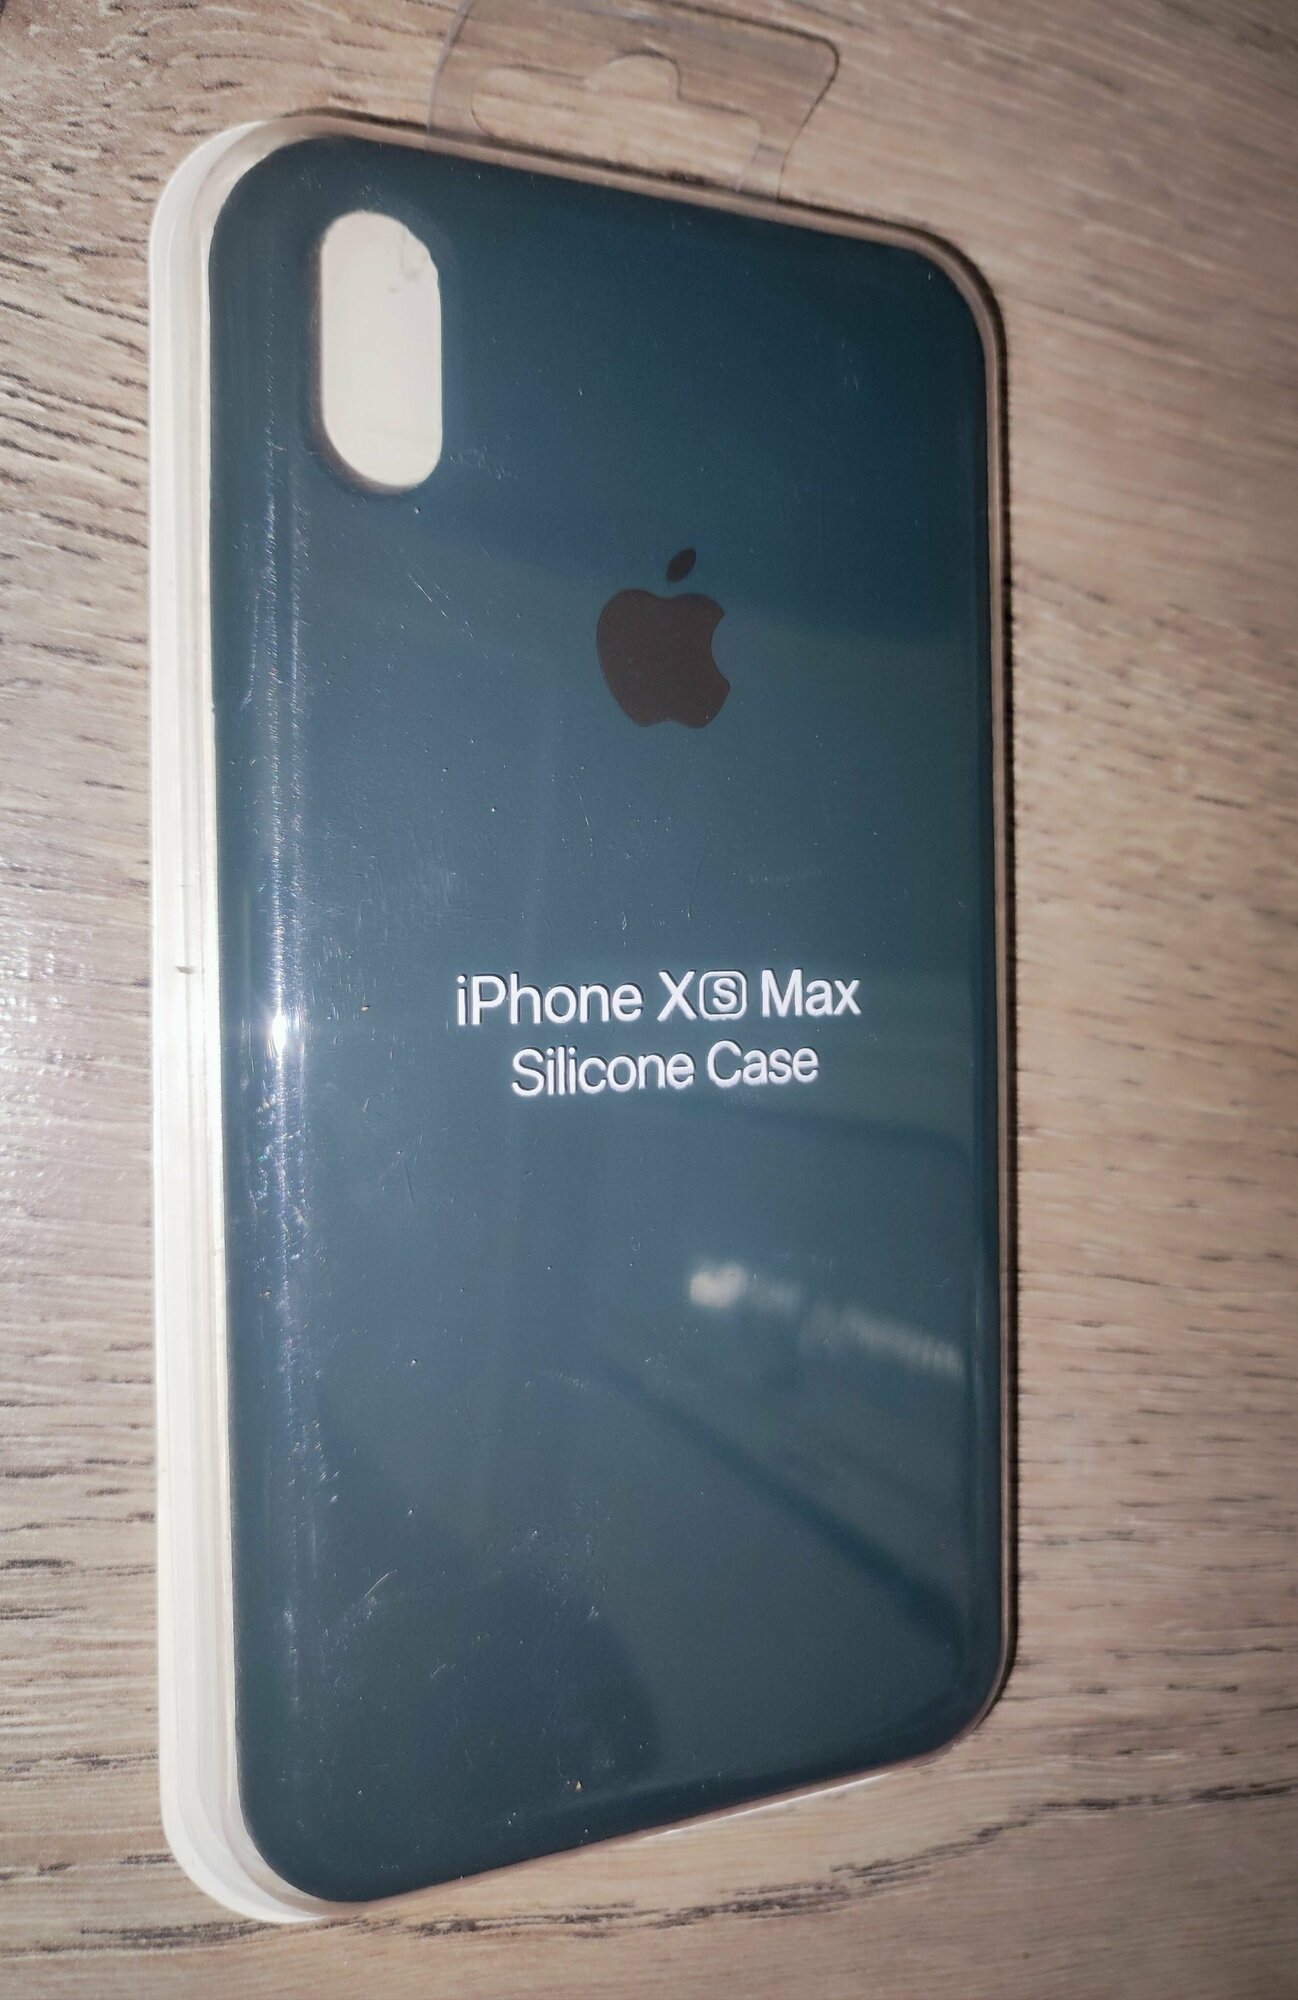 IPhone XS MAX тёмно-зелёный силиконовый чехол Silicone case для айфон 10 икс эс макс